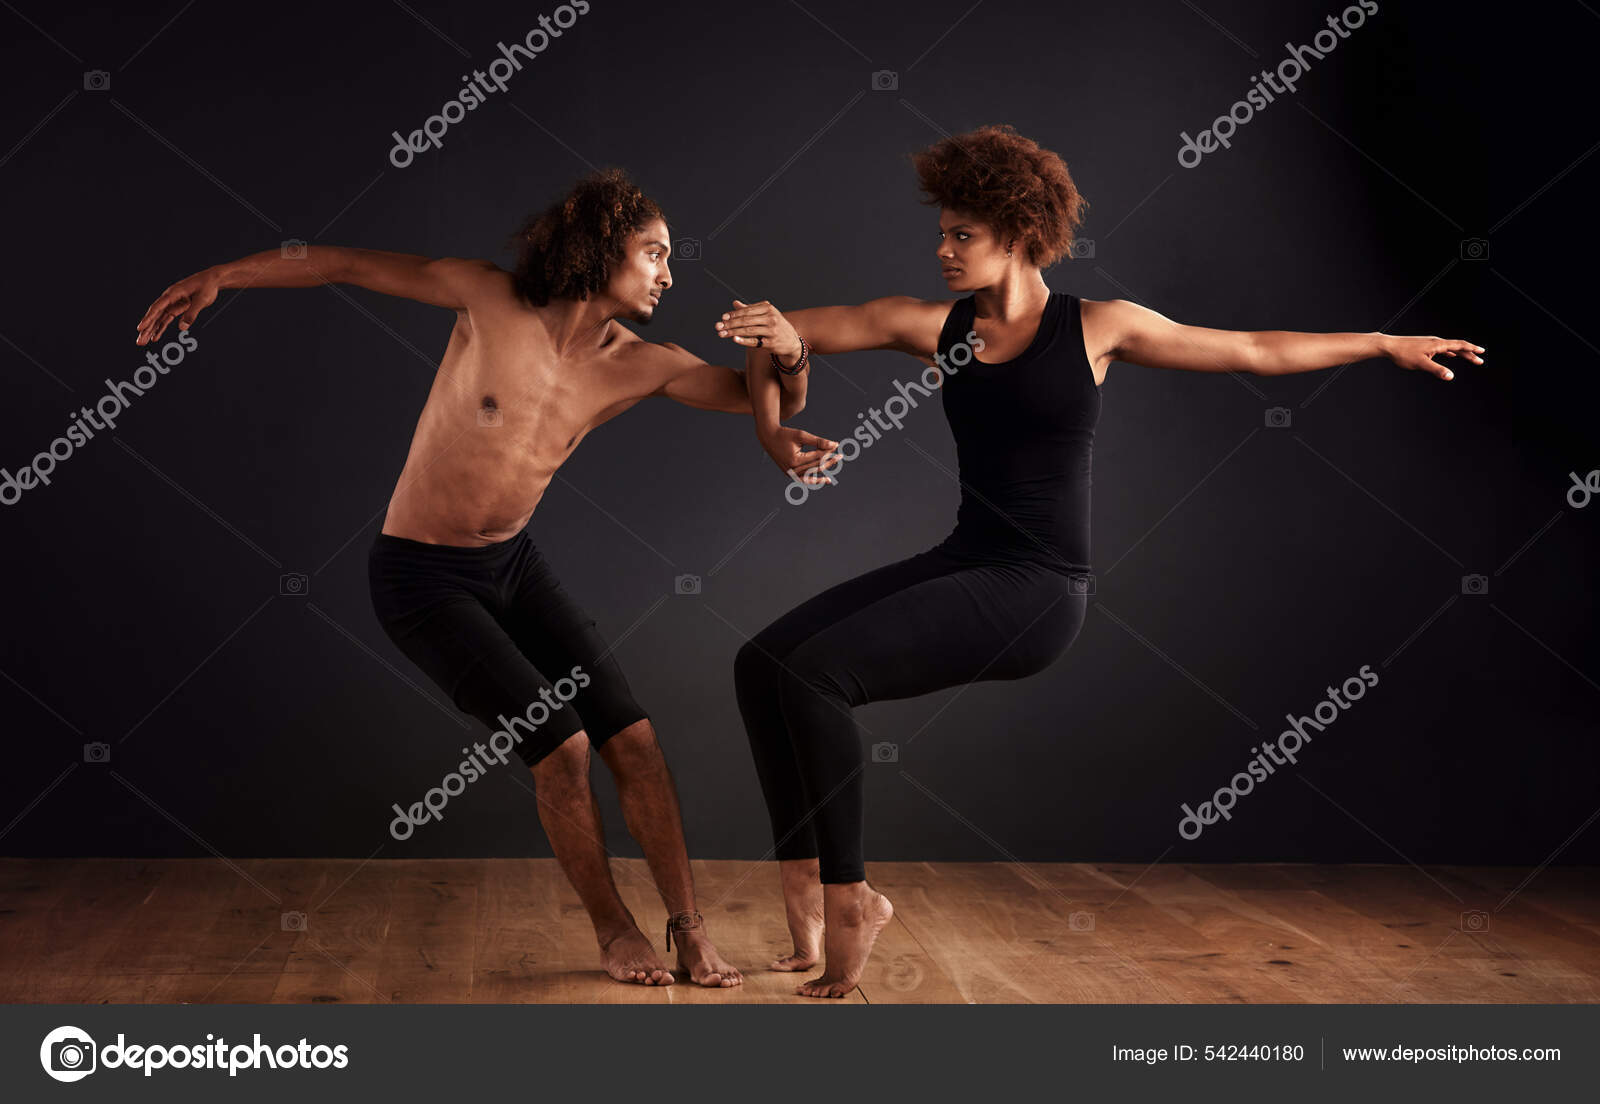 Beautiful Ballet duo pose | Chris Willis | Flickr